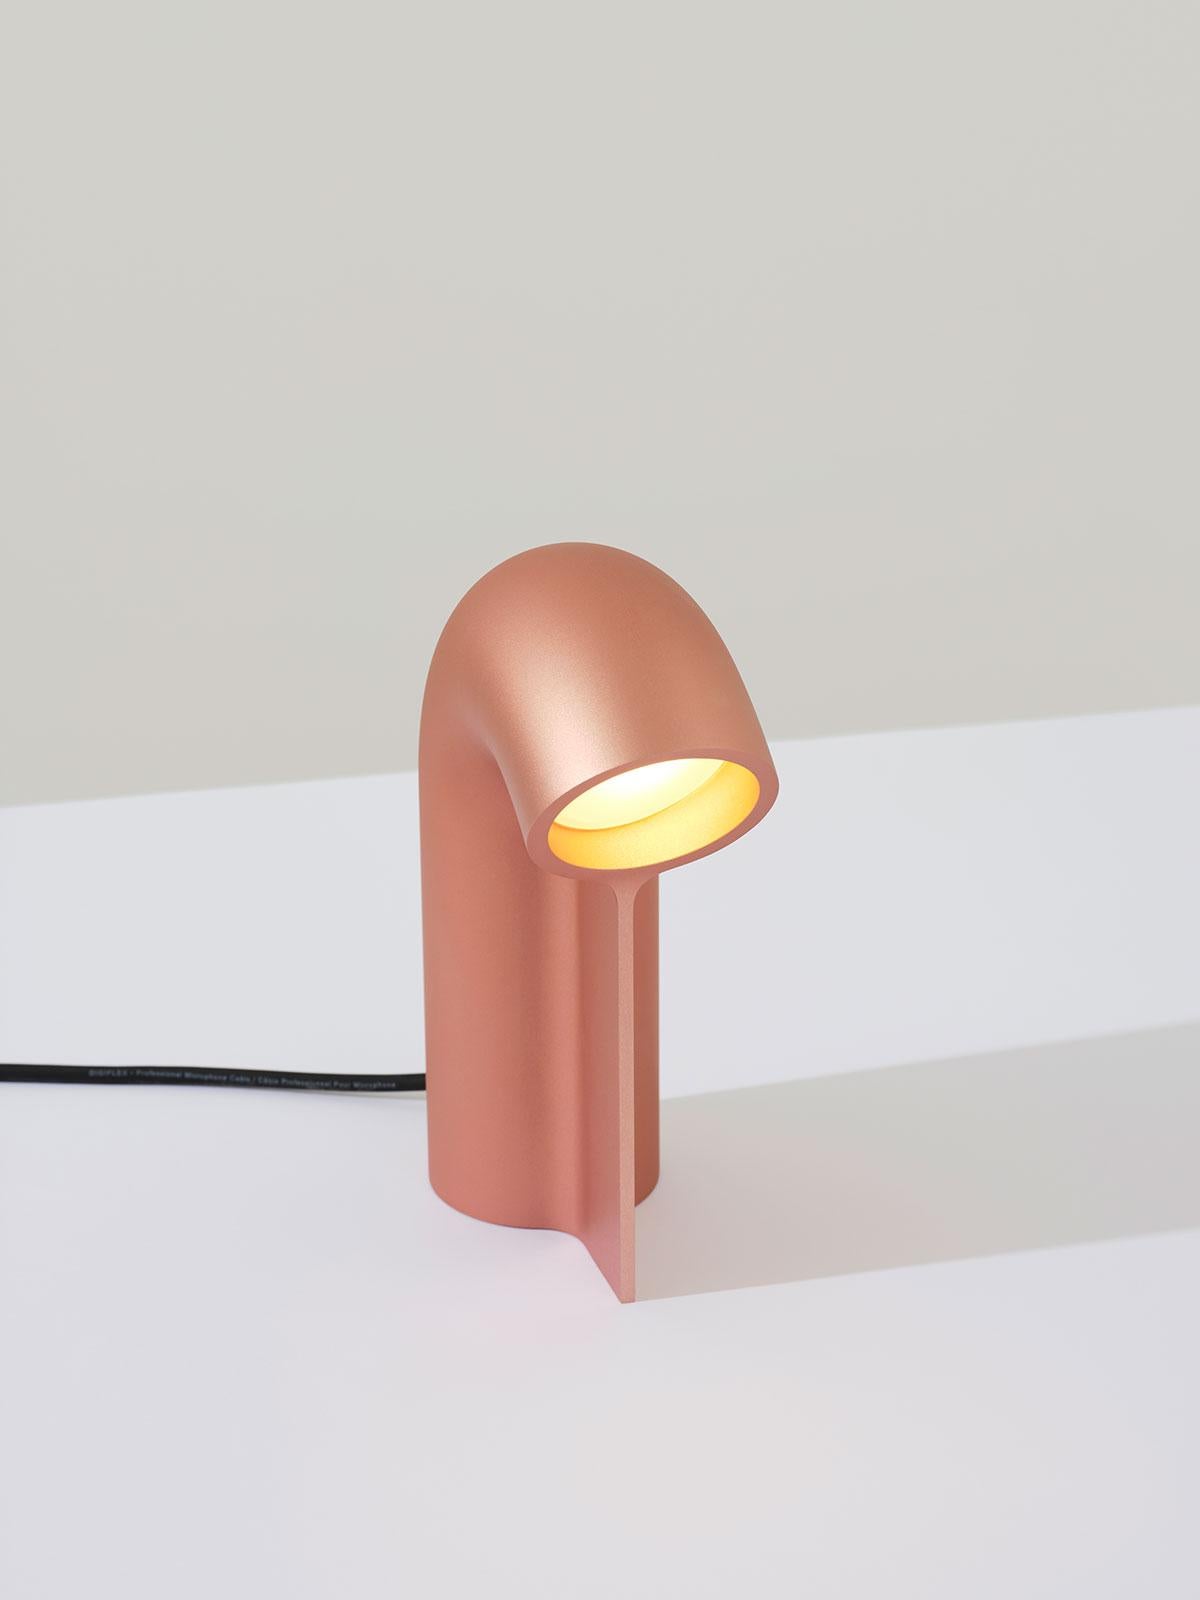 Post-Modern Stutter Light Table Lamp by Calen Knauf